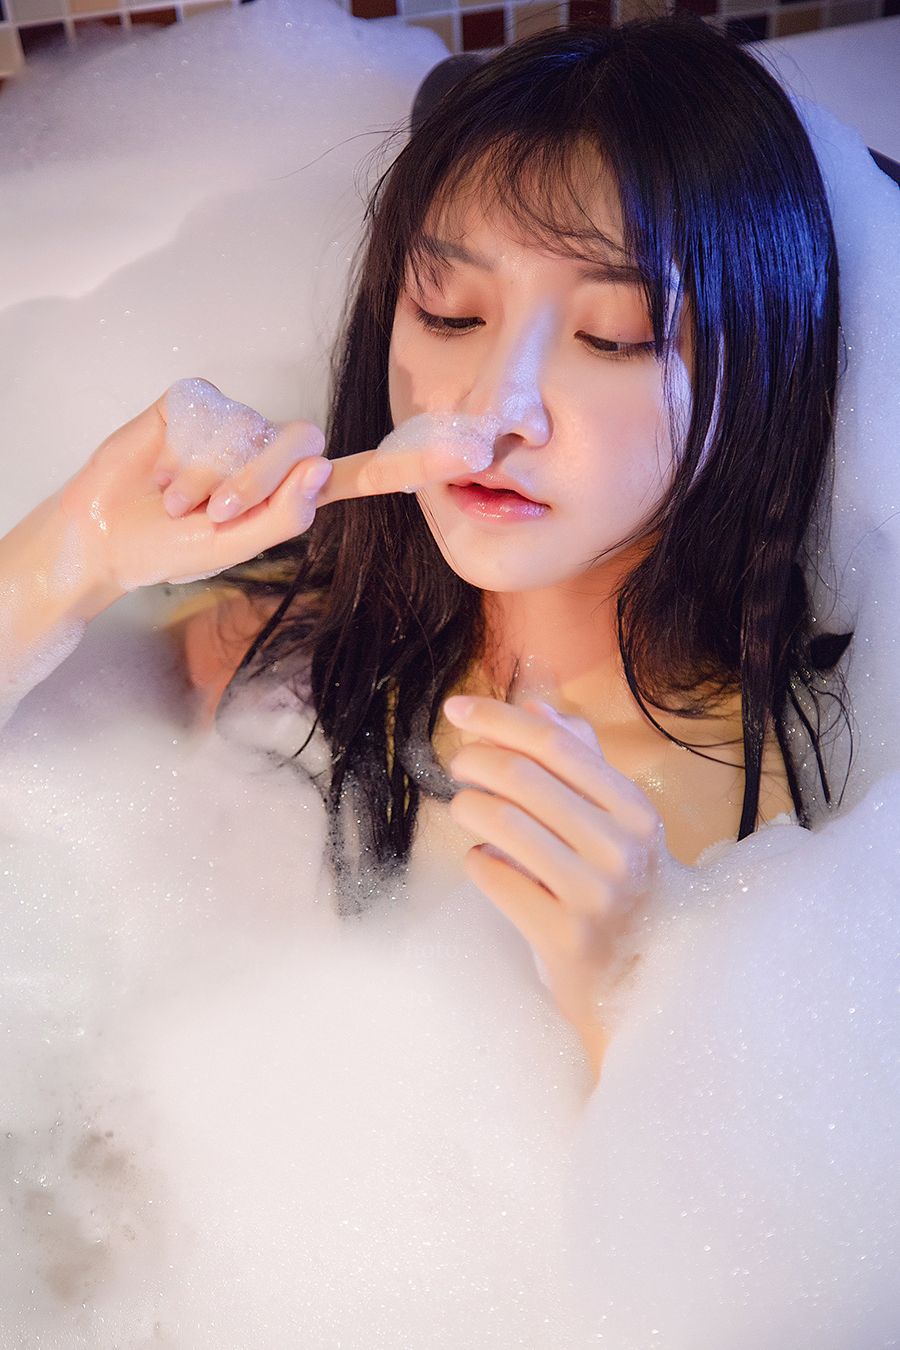 TouTiao Girls Vol. 588 Bubble Love